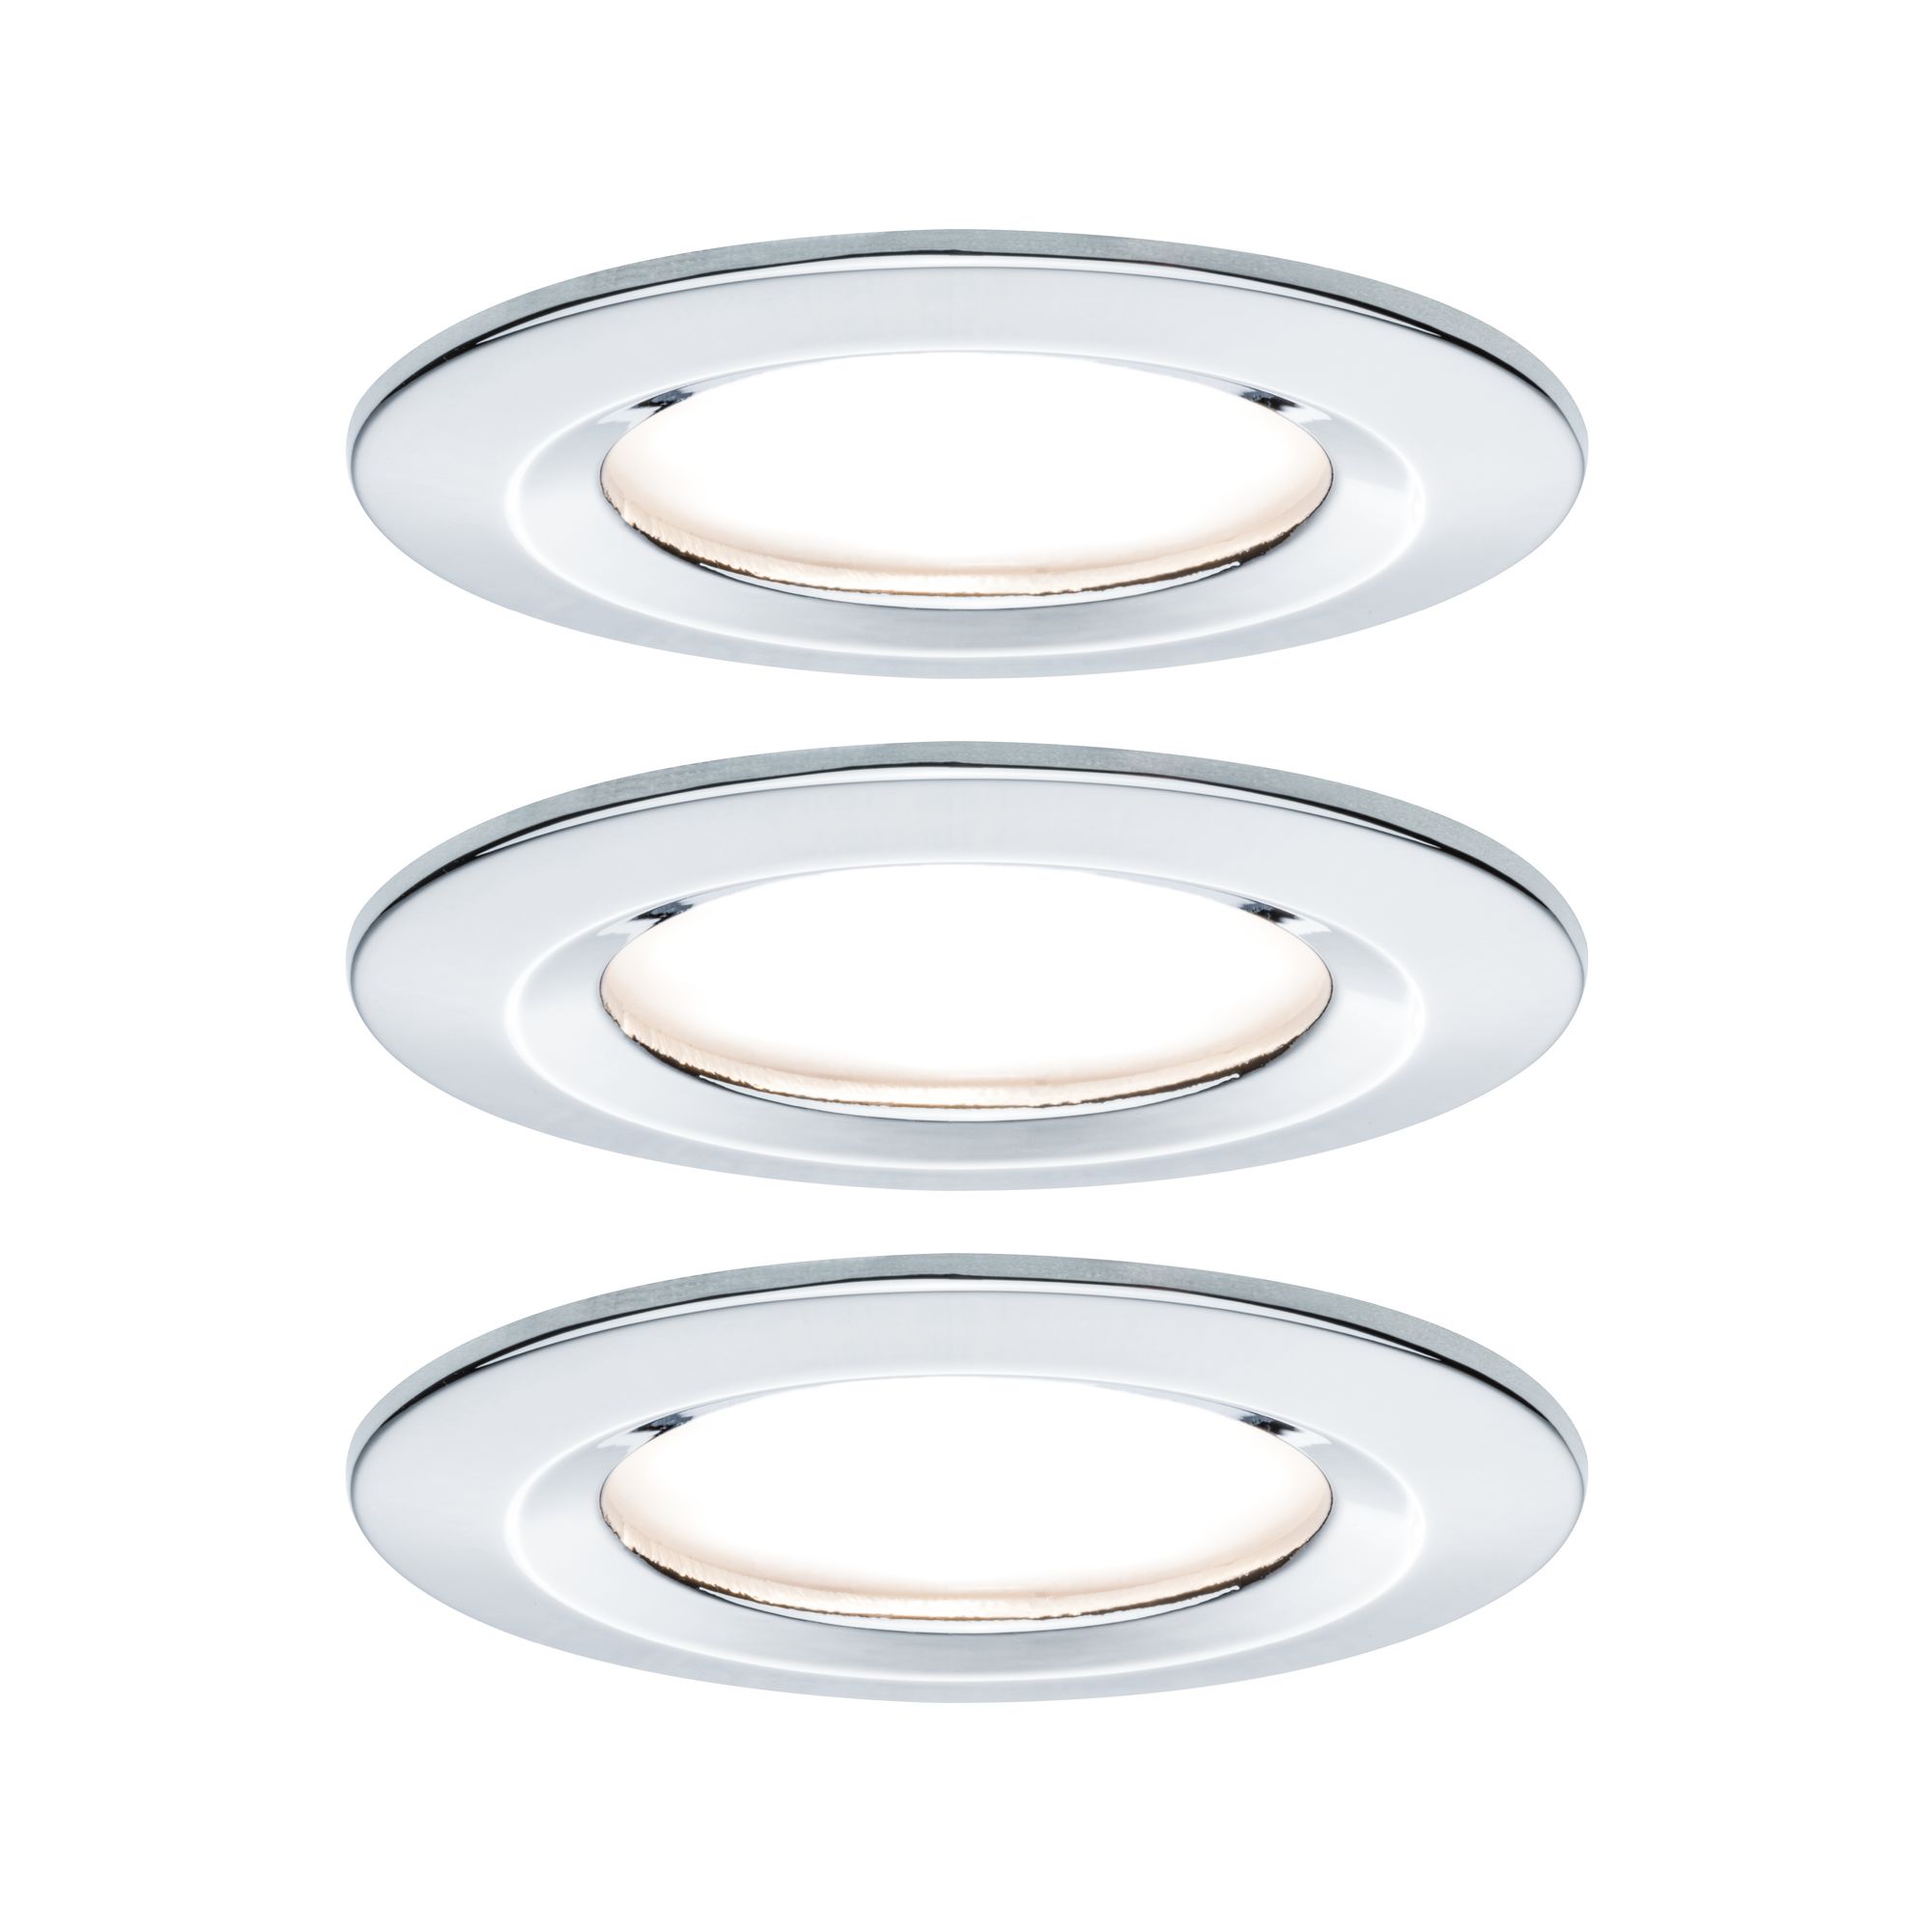 PAULMANN - Vestavné svítidlo LED Nova kruhové 3x6,5W GU10 chrom nevýklopné, P 93445